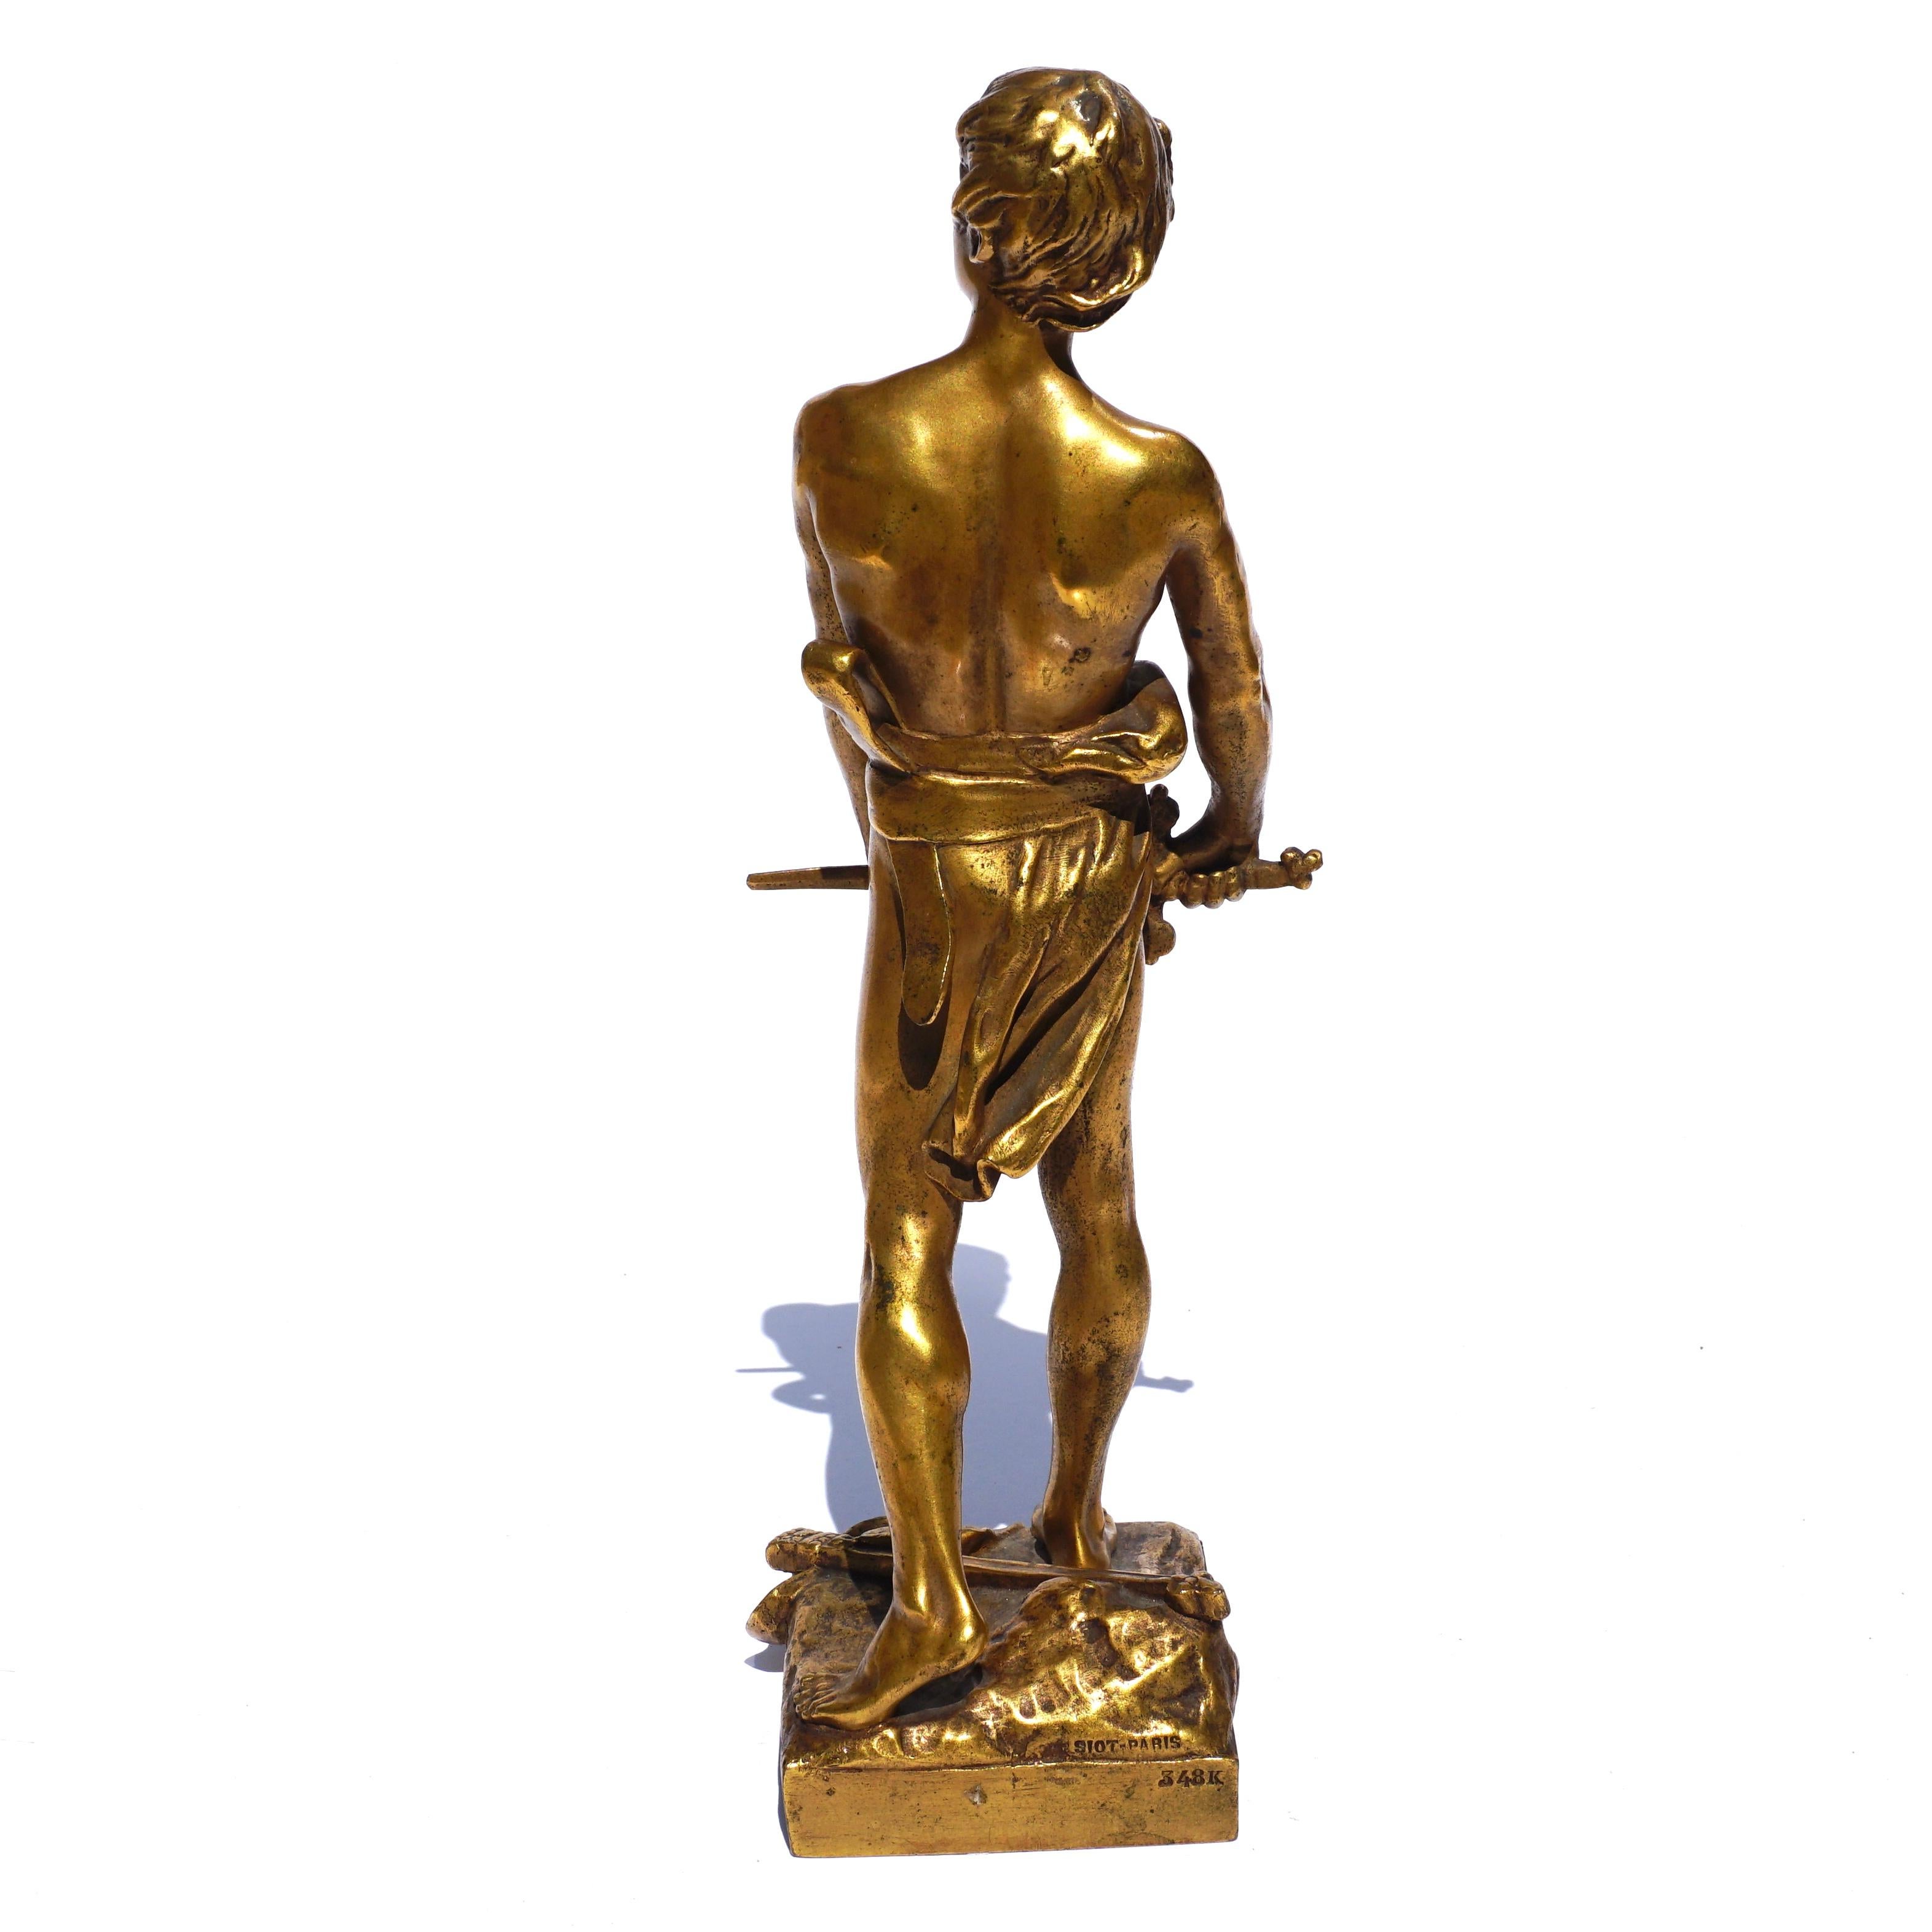 Early 20th Century Francois Raoul Larche “Vingt Ans” Gilt Bronze